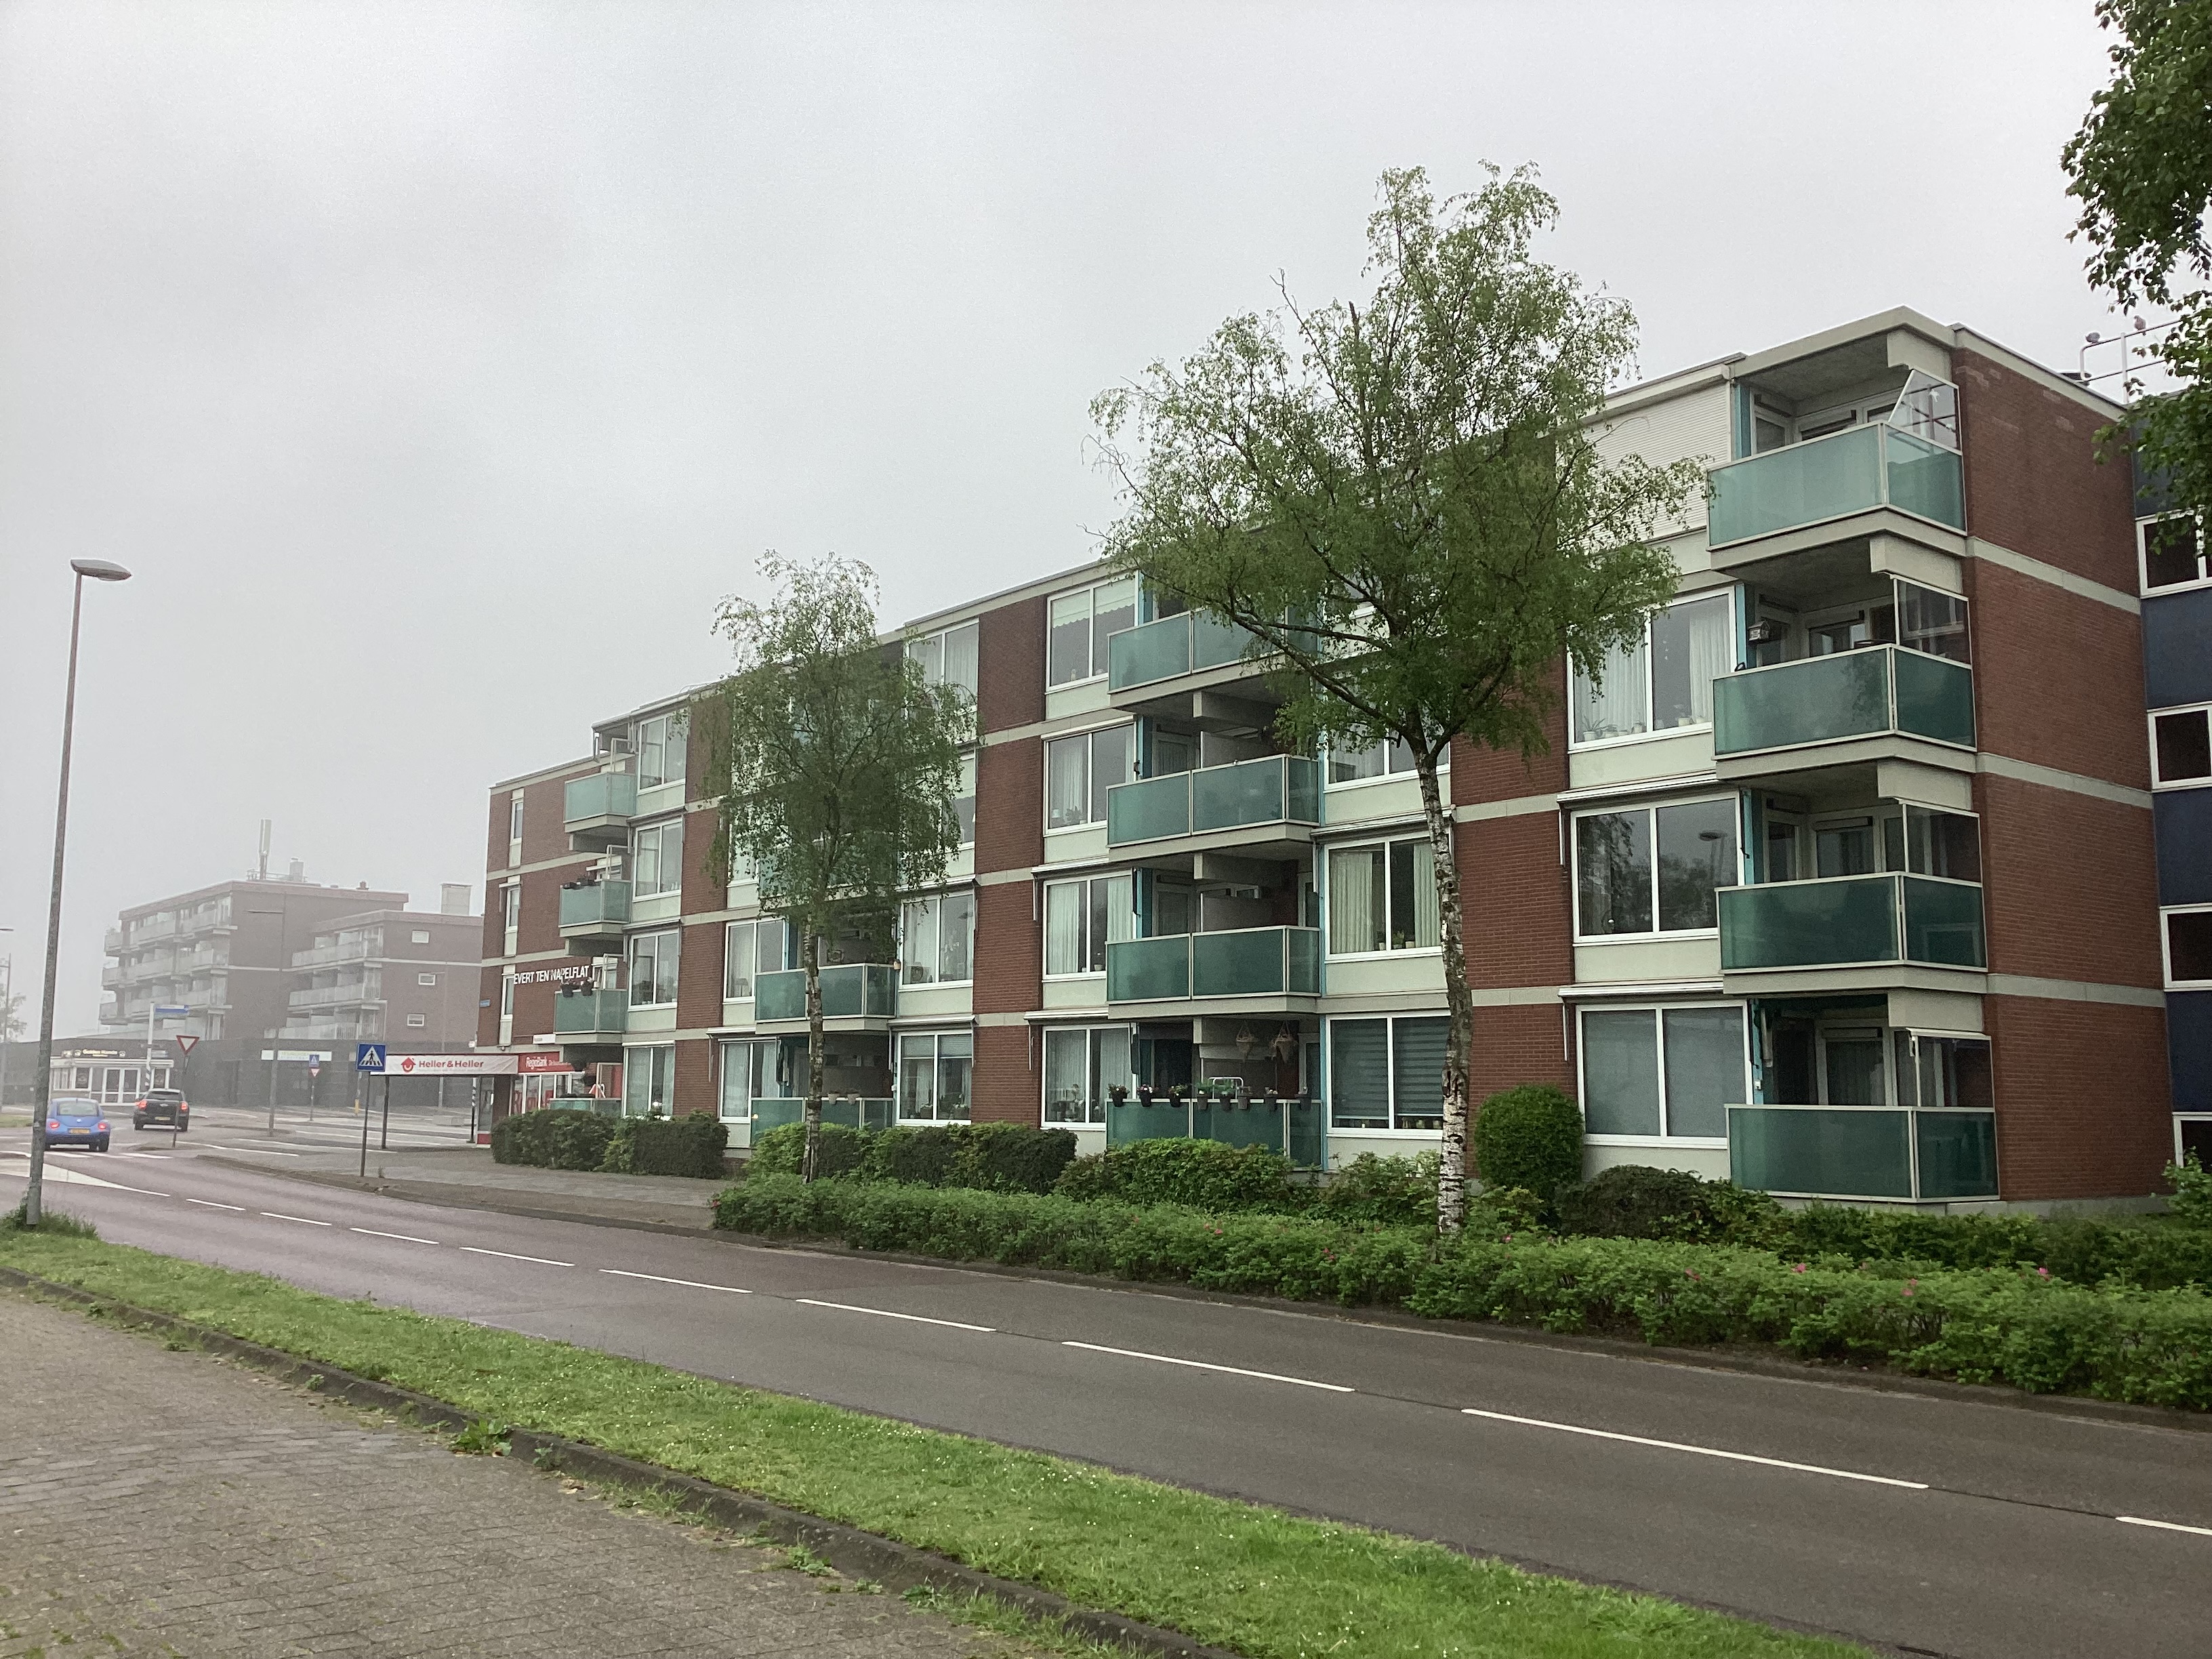 Evert ten Napelstraat 41, 7891 GX Klazienaveen, Nederland